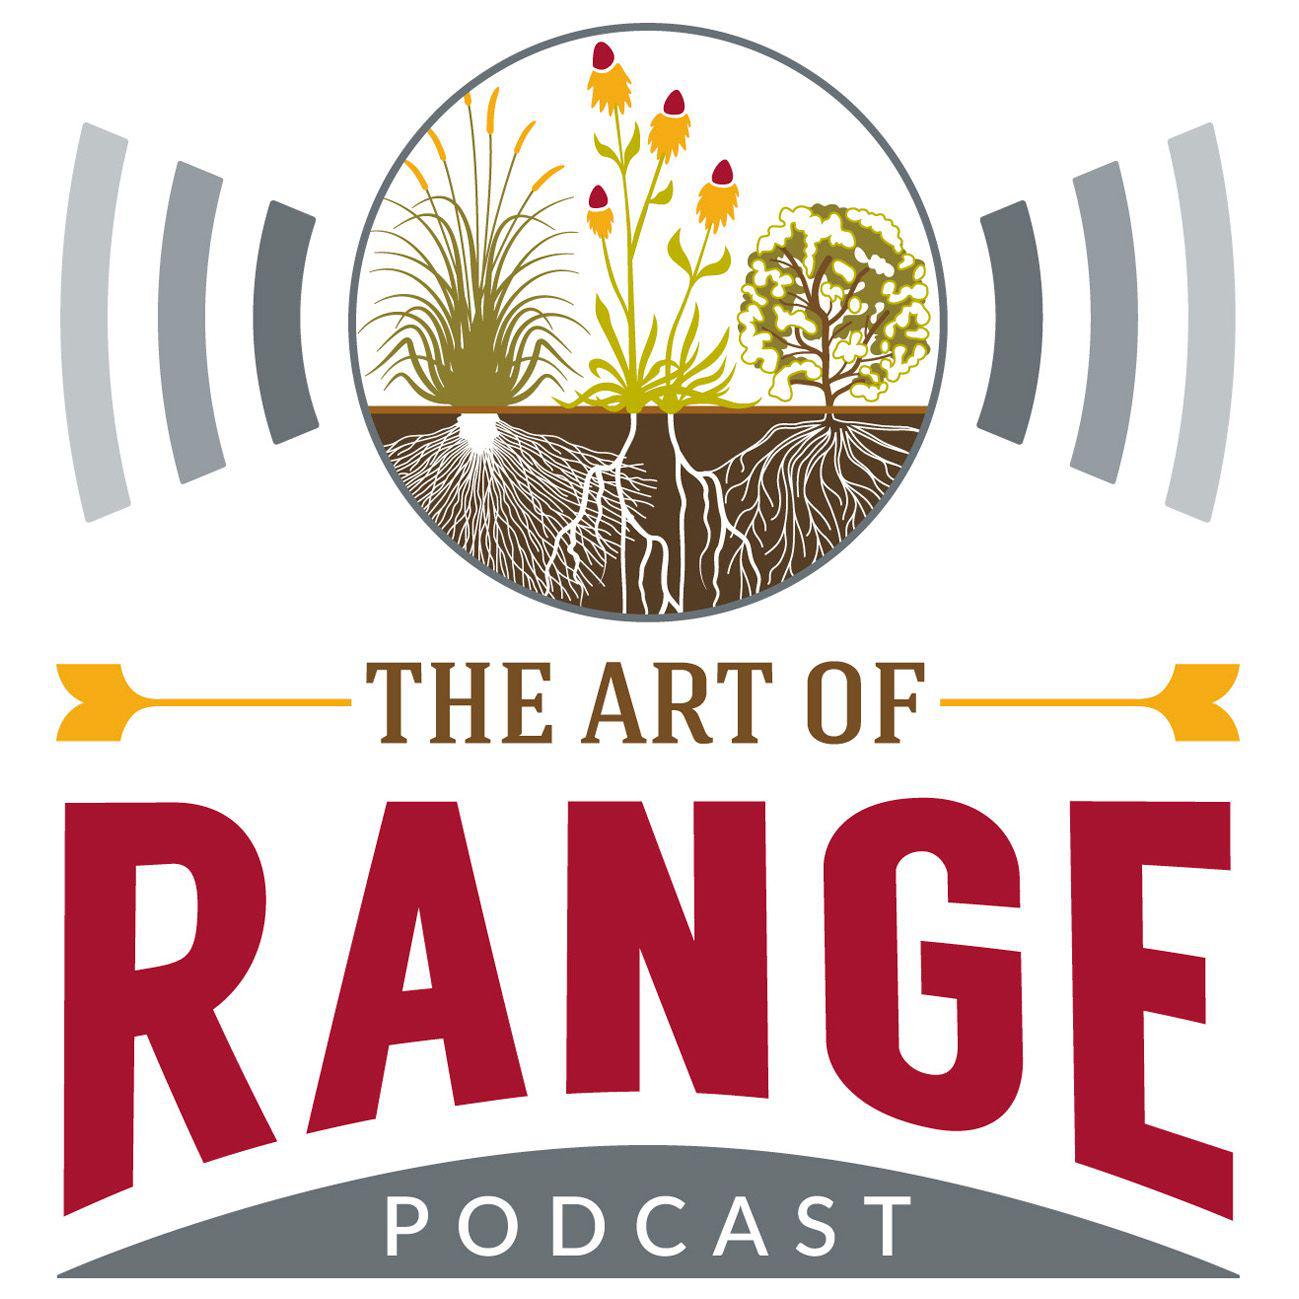 The Art of Range Podcast Logo